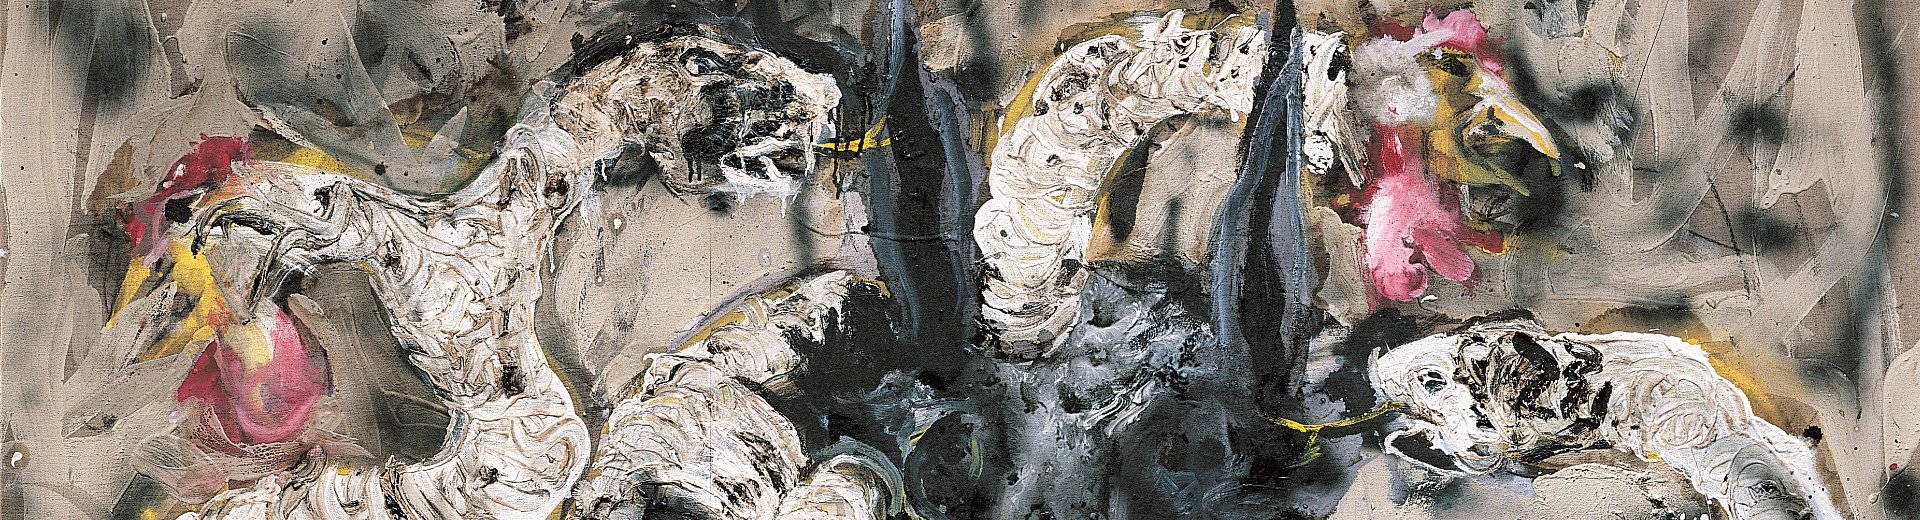 Les Animaux malades de l’eugénisme III, série « Clones », 2003, peinture sur toile, 130 x 195 cm. © Collection particulière – Cliché M.Nguyen